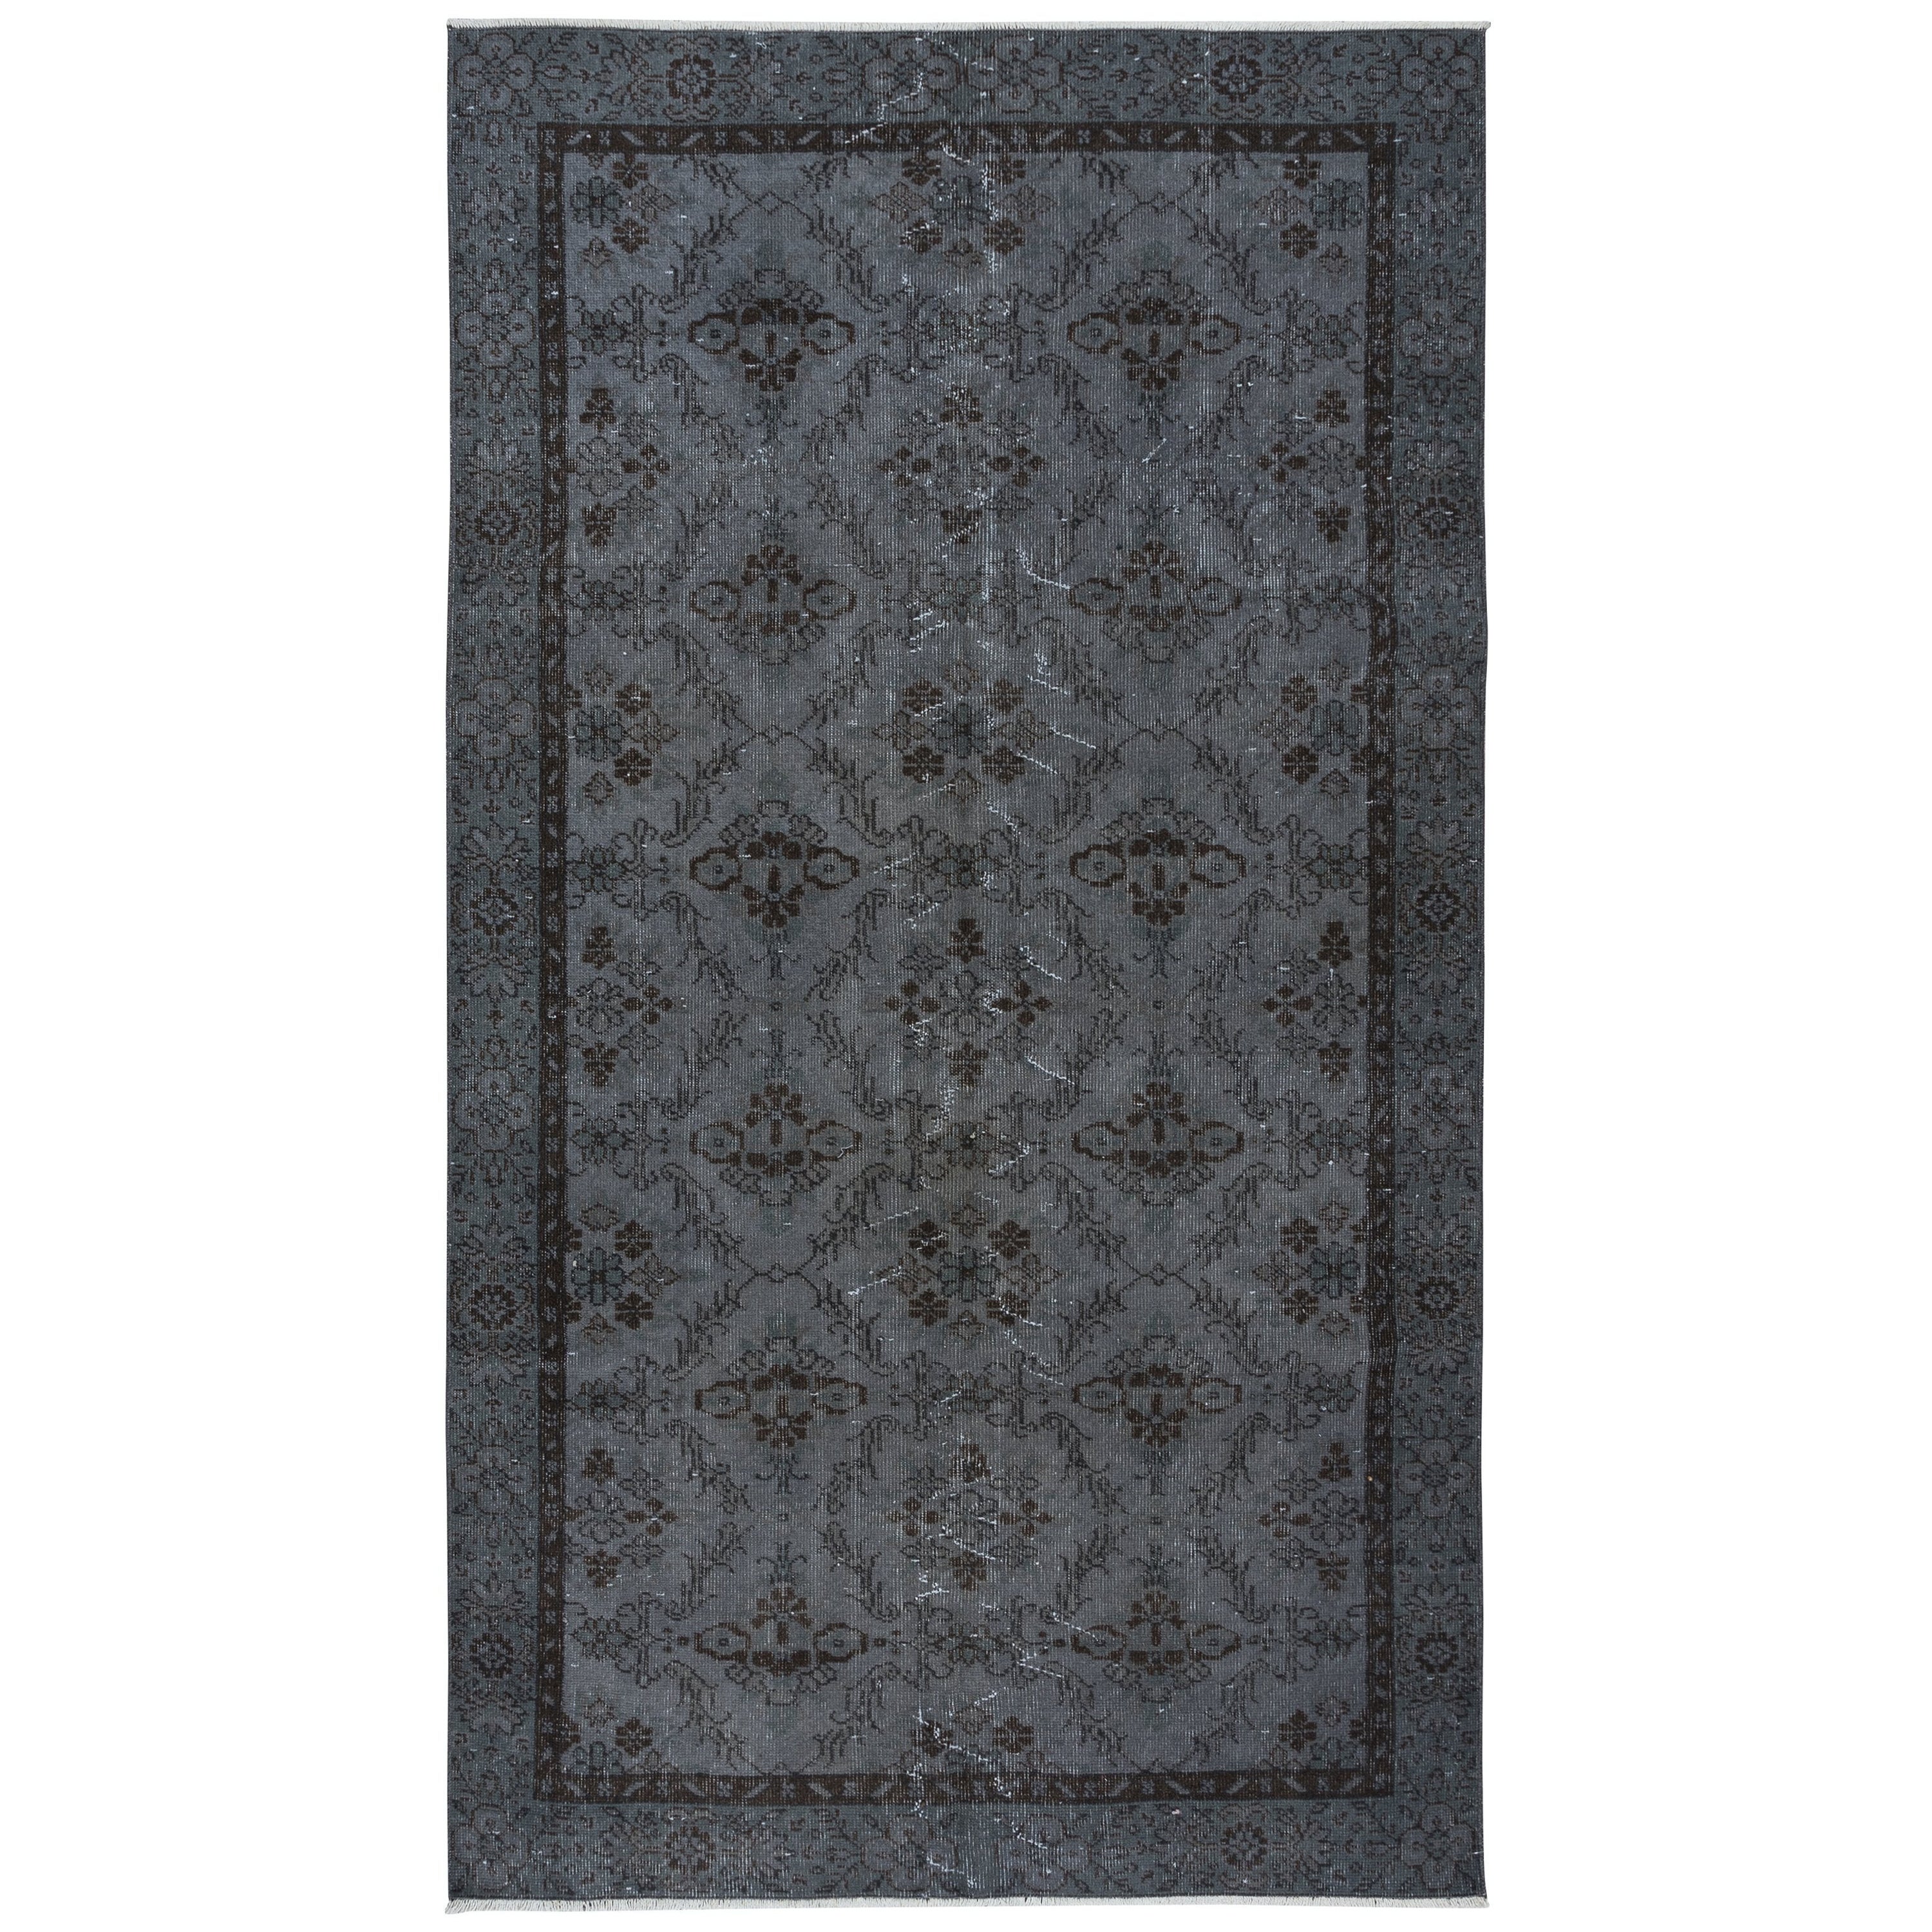 4,8x8.4 Ft authentischer handgefertigter Teppich mit Blumenmuster, upcycelter Teppich in reinem Grau im Angebot